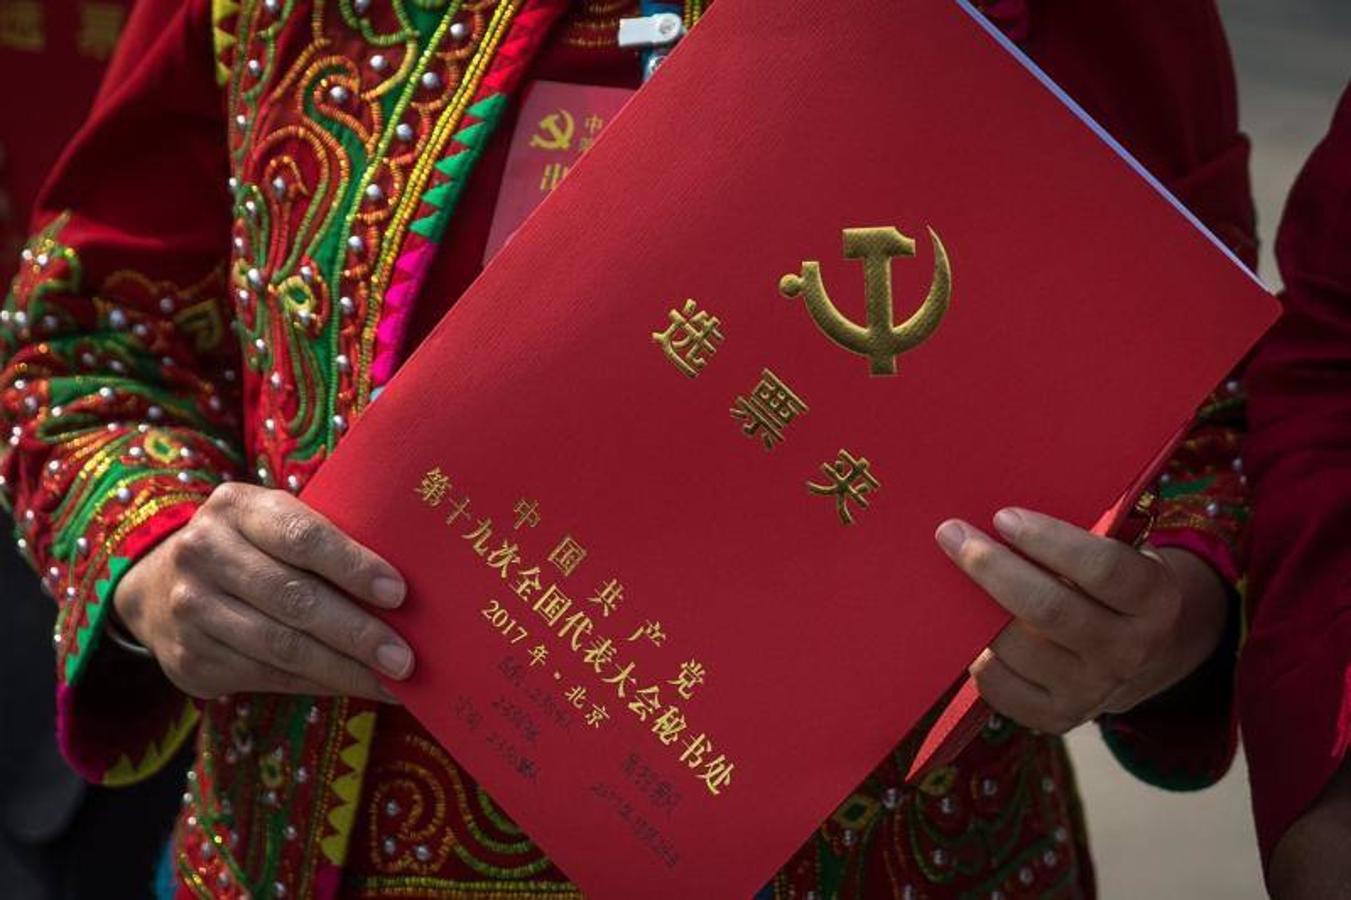 Clausura del XIX Congreso Nacional del Partido Comunista de China (PCCh) en el Gran Palacio del Pueblo (GHOP) en Pekín, China.